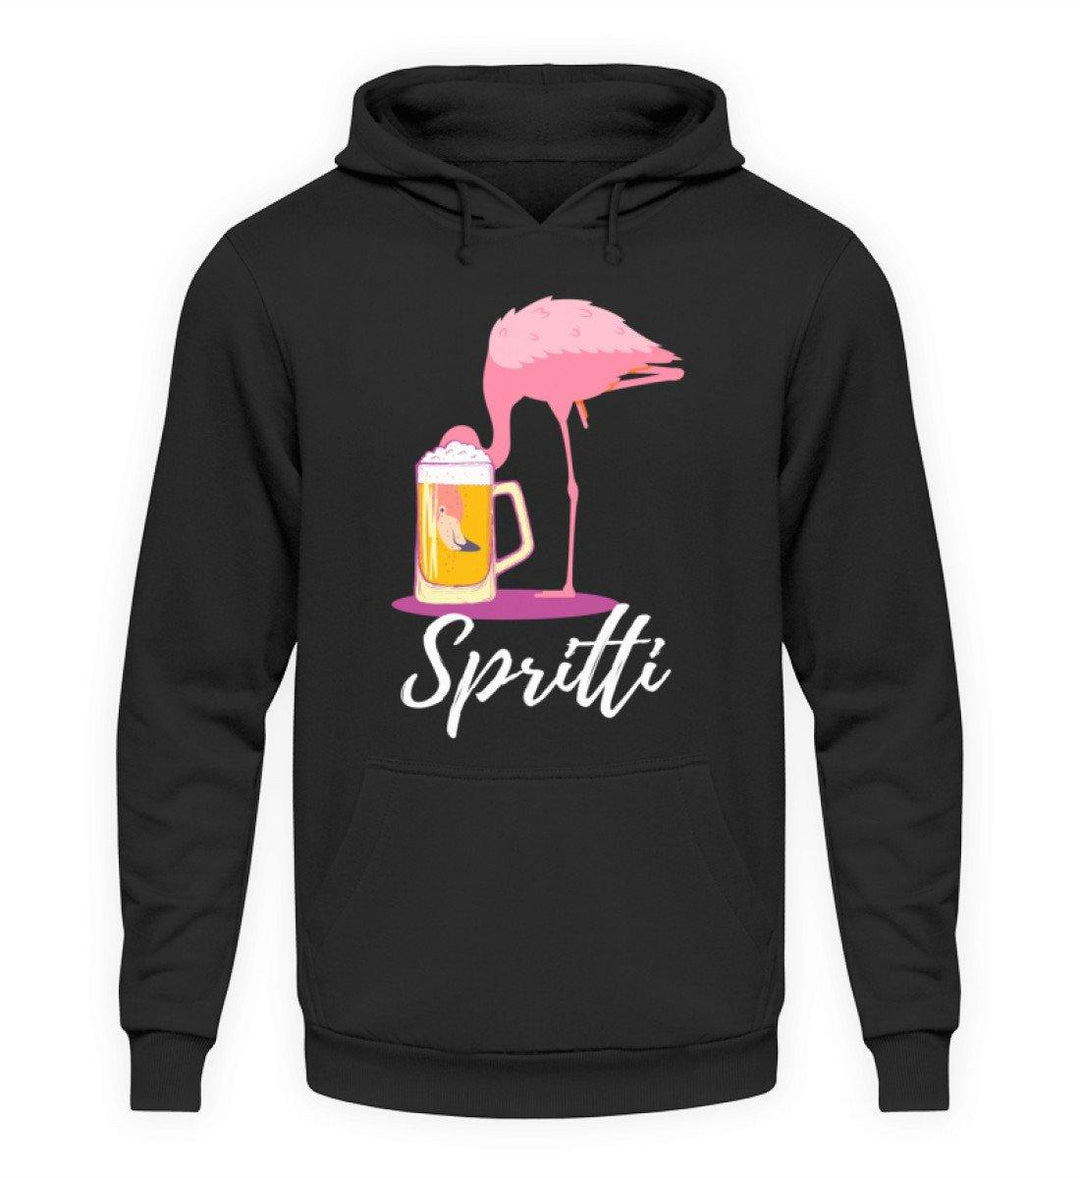 Flamingo Spritti - Words on Shirt  - Unisex Kapuzenpullover Hoodie - Words on Shirts Sag es mit dem Mittelfinger Shirts Hoodies Sweatshirt Taschen Gymsack Spruch Sprüche Statement